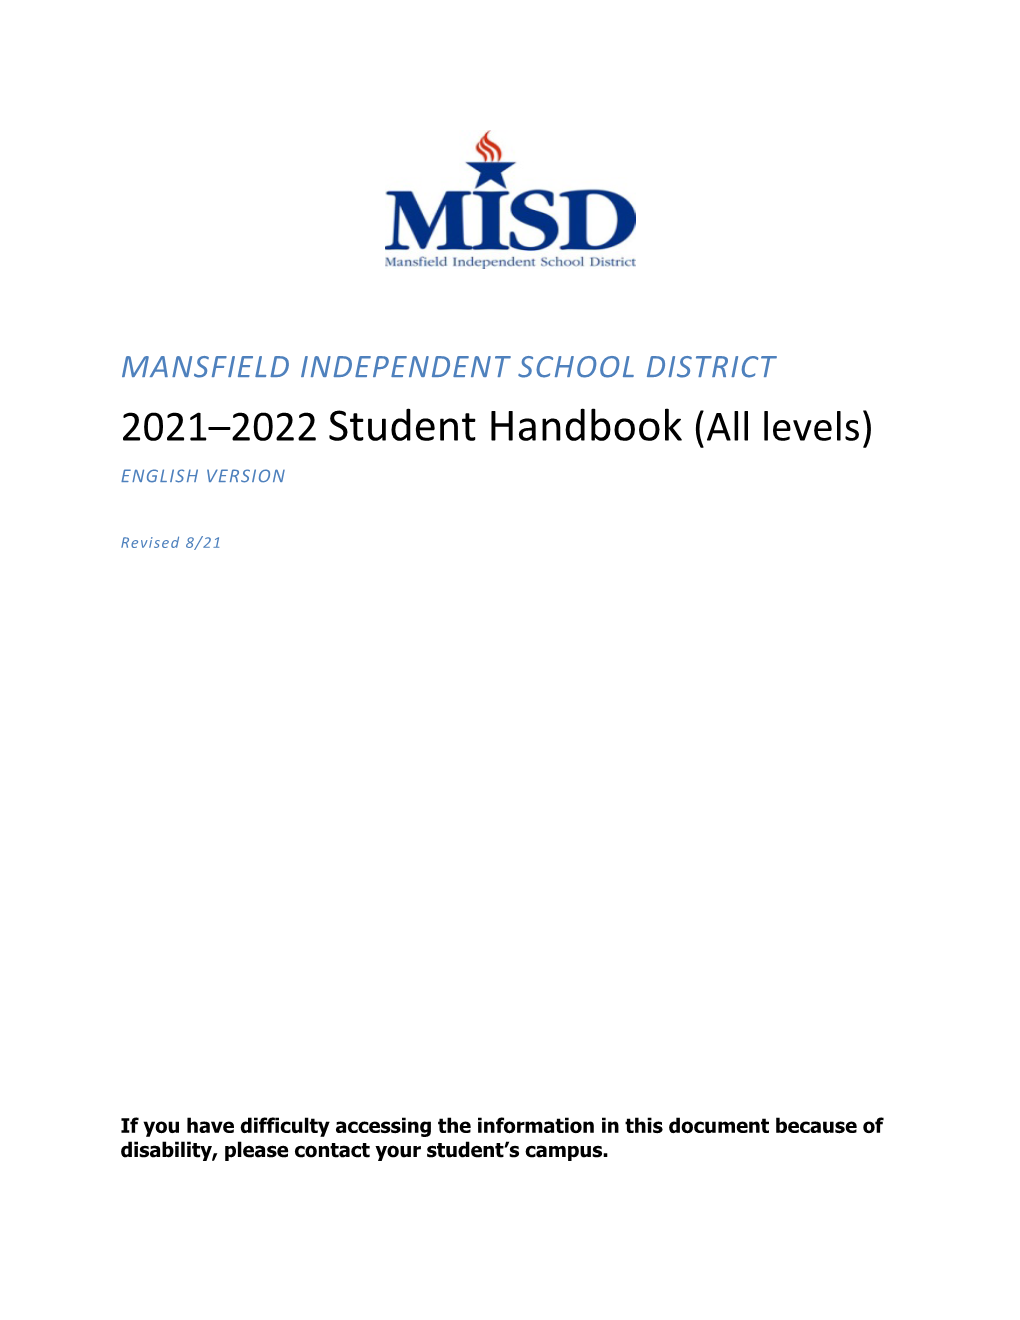 MISD Student Handbook (All Grade Levels)